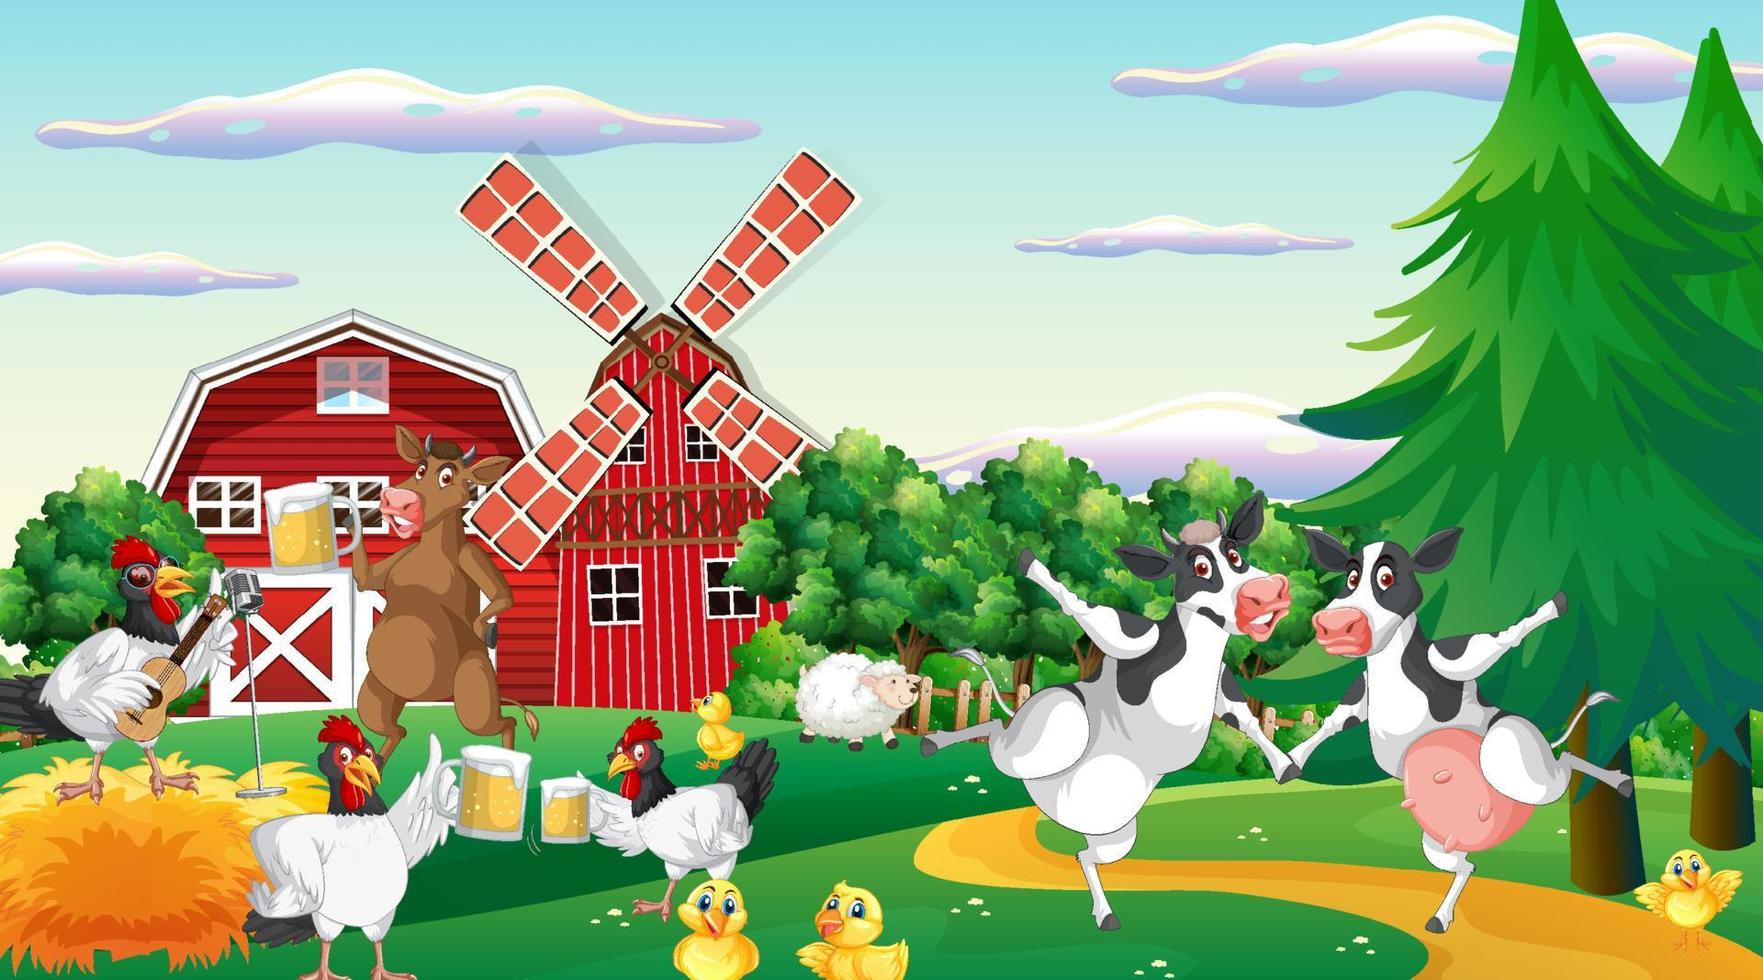 scena di allevamento di mucche all'aperto con cartoni animati di animali felici vettore